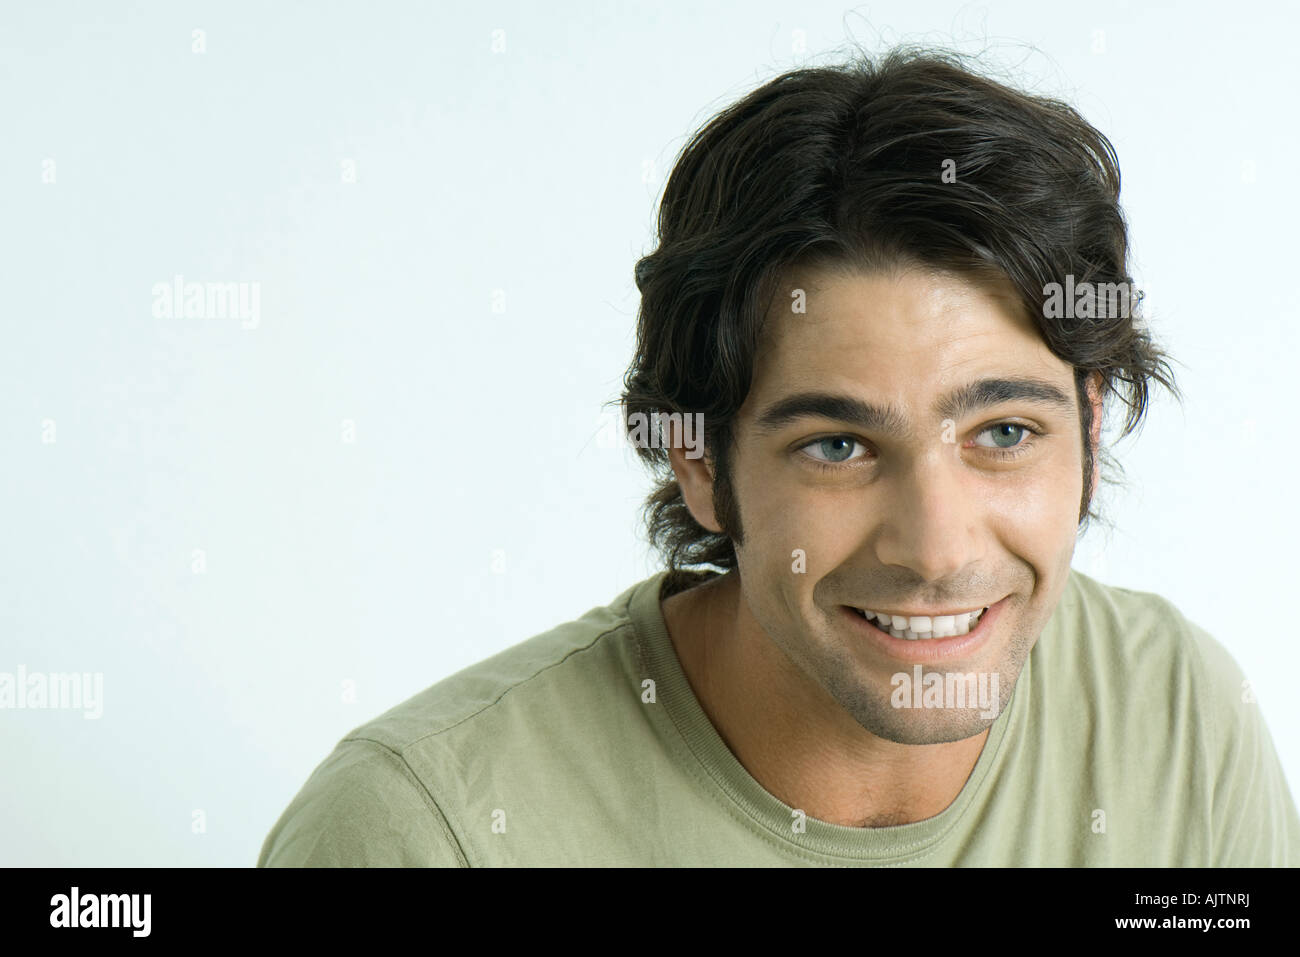 Man smiling, raising eyebrows, looking away Stock Photo